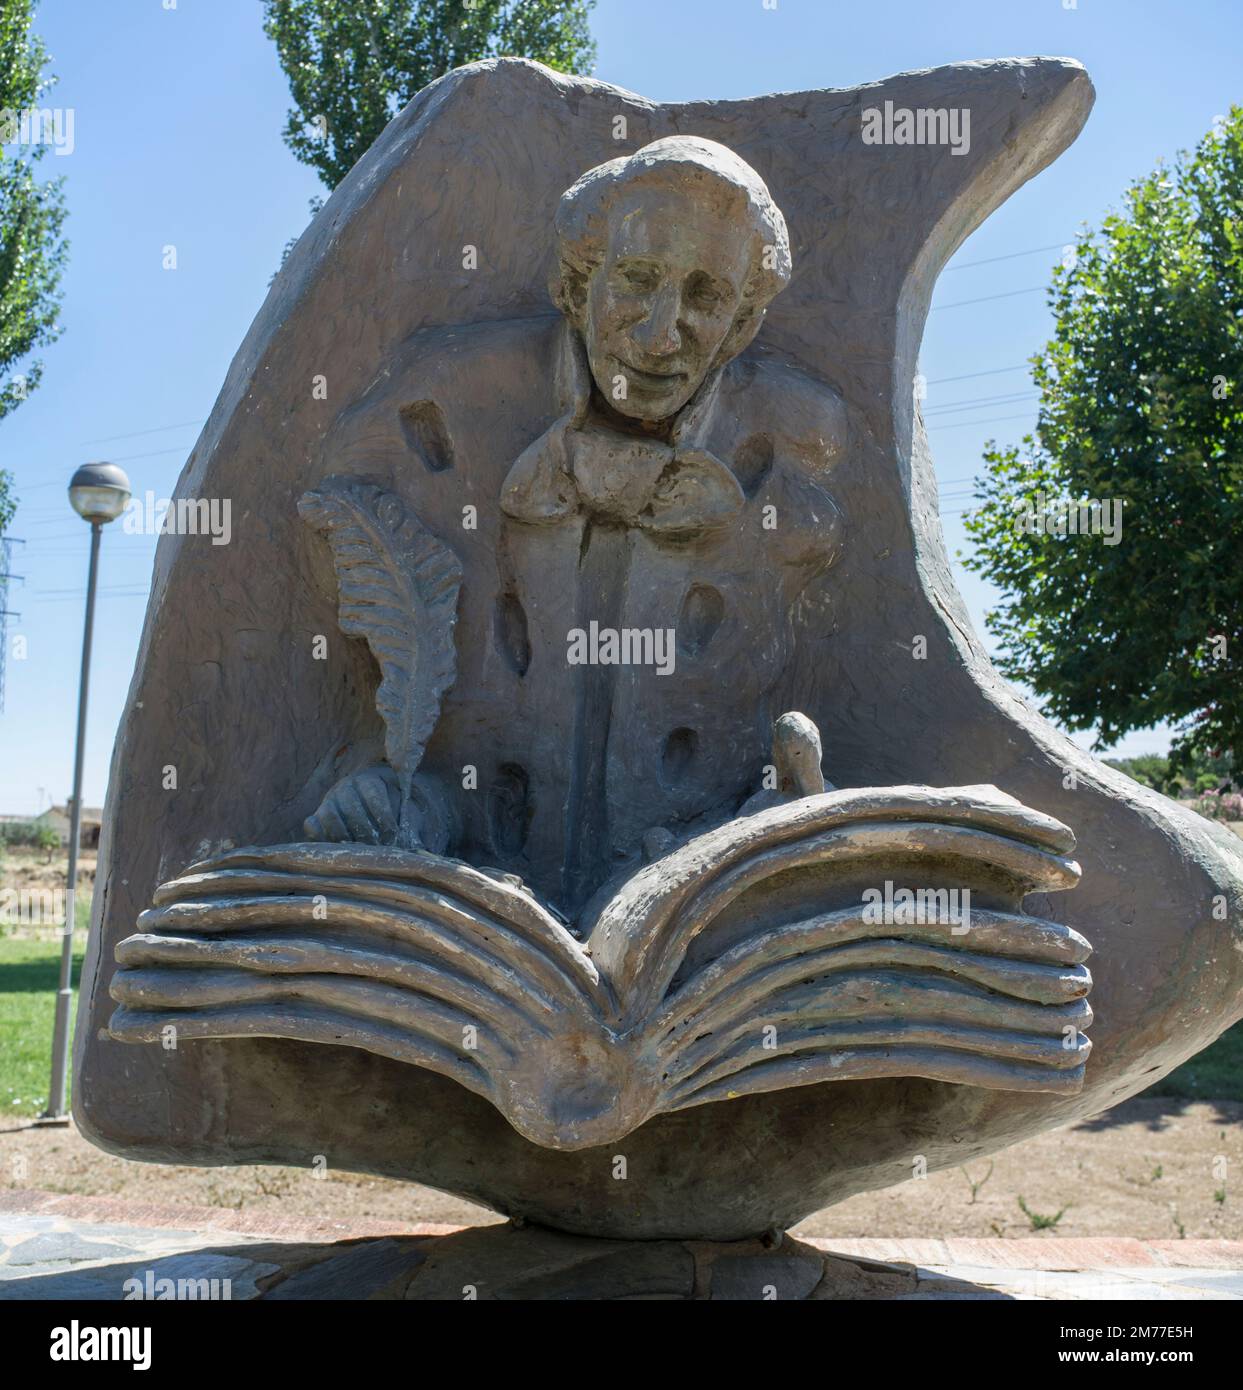 La Albuera, Espagne - 12th juin 2021 : le monument Hans Christian Andersen, représentant l'auteur écrivant le laid Duckling. Badajoz, Espagne. Banque D'Images